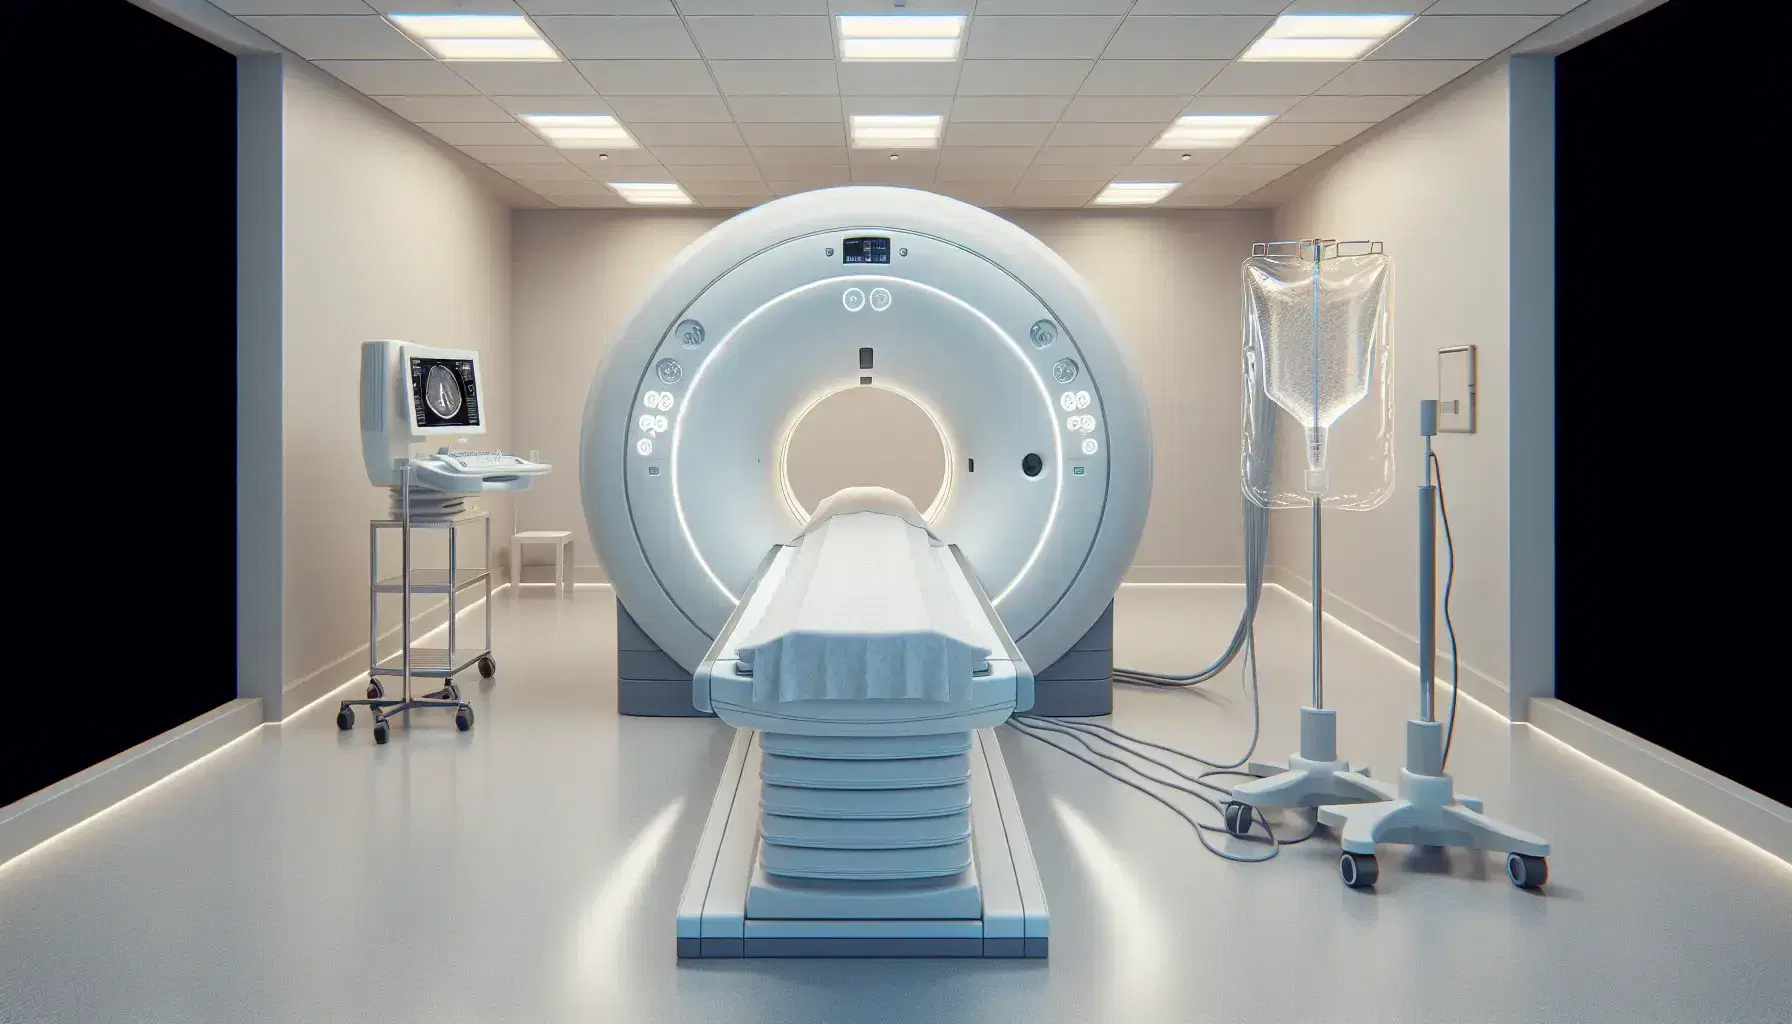 Sala de tomografía computarizada con máquina CT cilíndrica blanca, camilla deslizable y suero colgante, iluminada y sin personas.